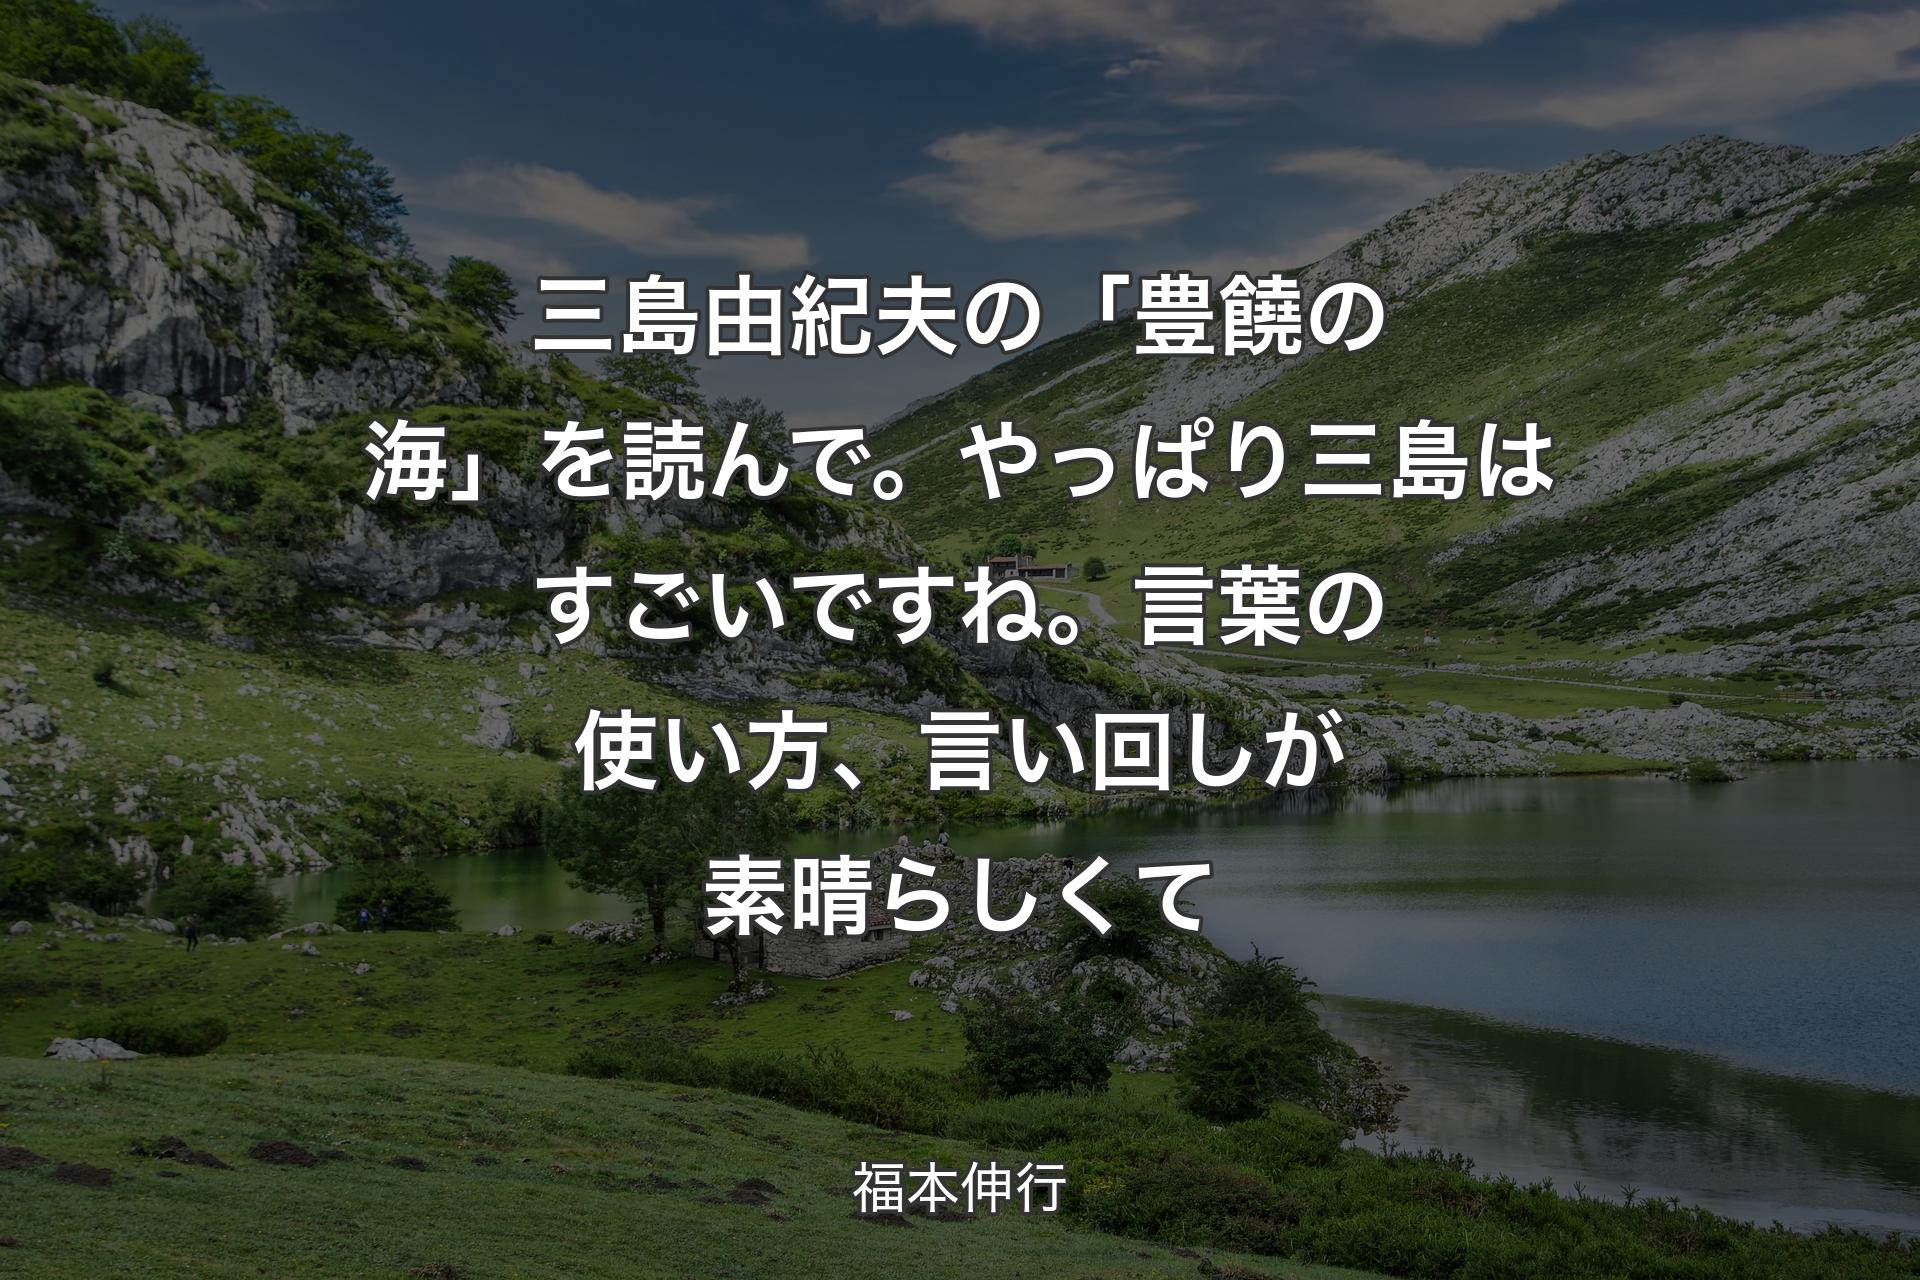 【背景1】三島由紀夫の「豊饒の海」を読んで。やっぱり三島はすごいですね。言葉の使い方、言い回しが素晴らしくて - 福本伸行